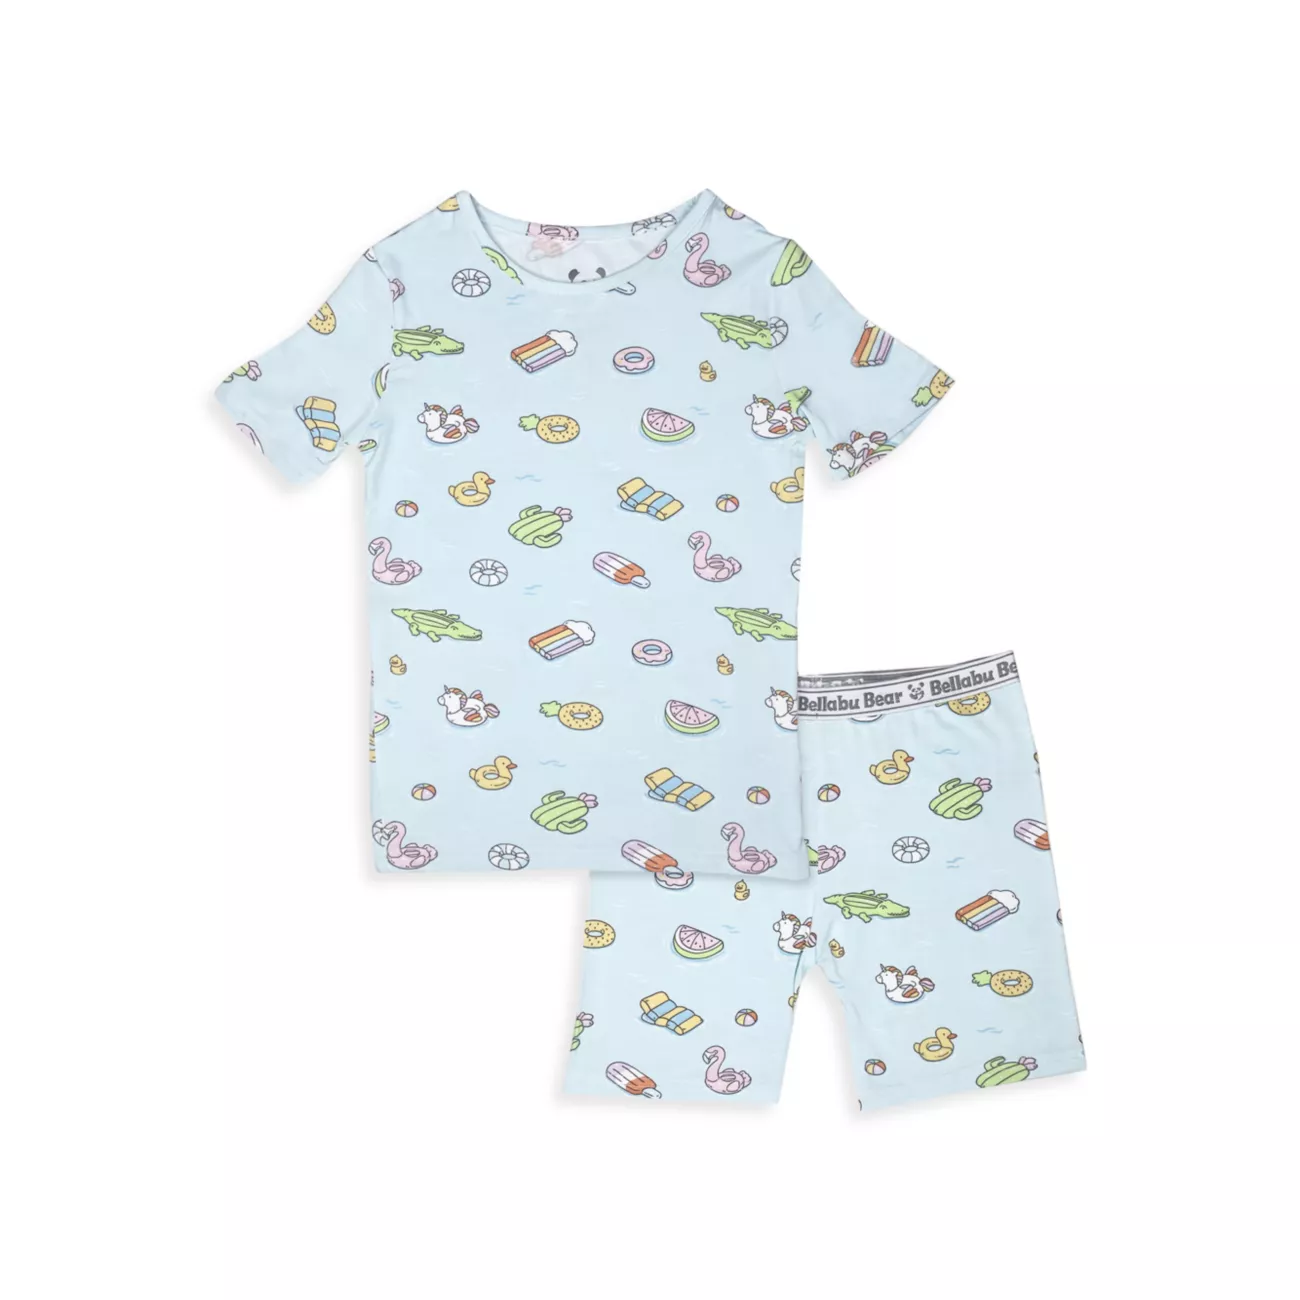 Baby Boy's, Little Boy's &amp; Комплект пижамных шорт с принтом для мальчиков, комплект из пижамных поплавков для бассейна Bellabu Bear